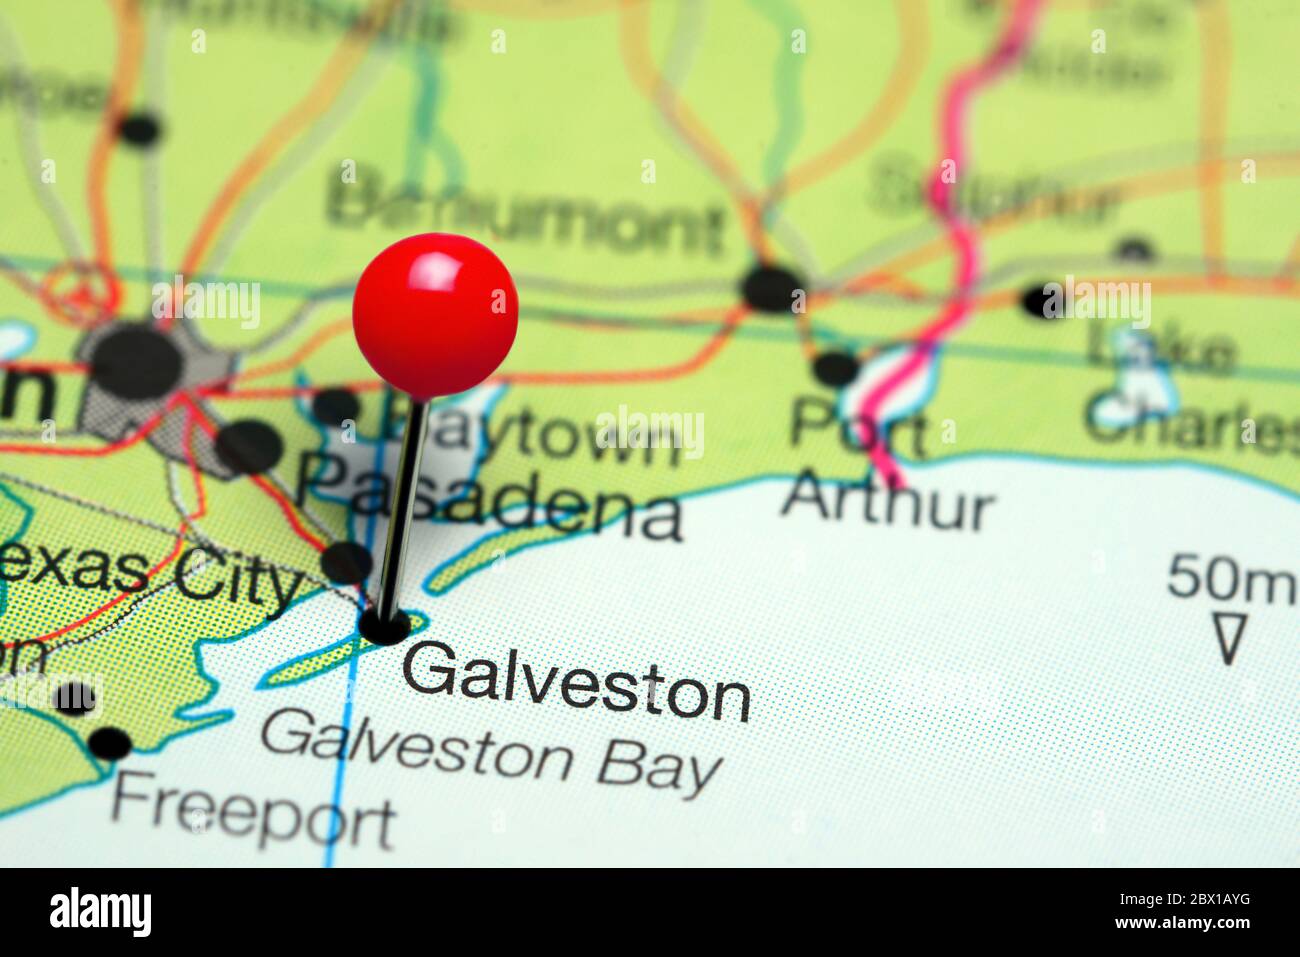 Galveston cubrió un mapa de Texas, Estados Unidos Foto de stock